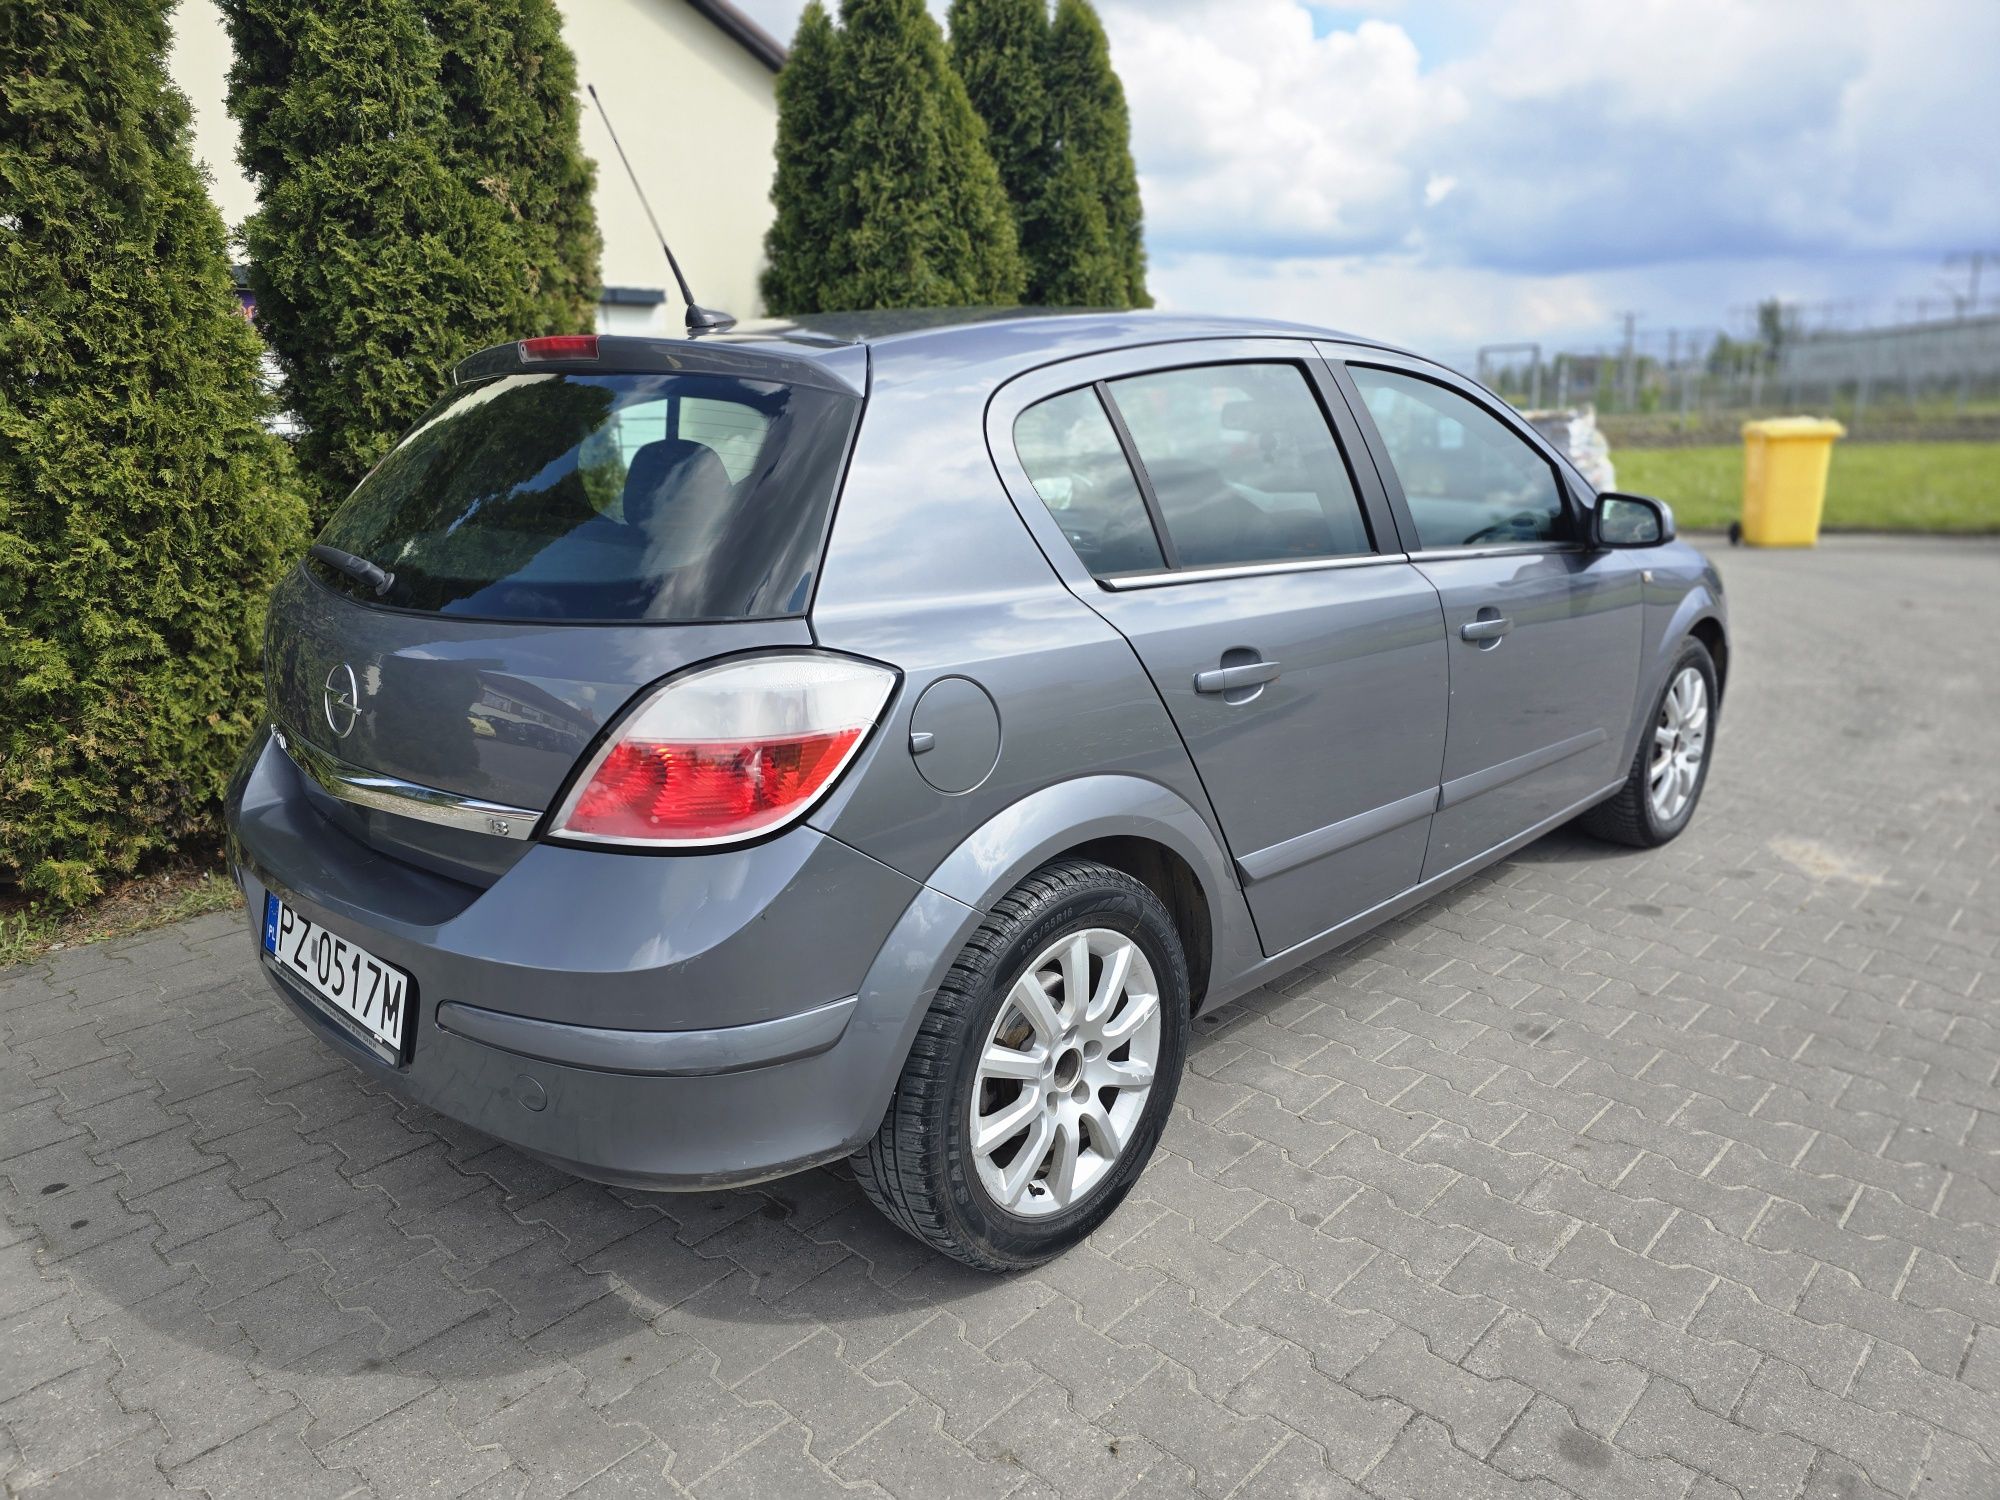 Opel Astra H 3 1.8 benzyna automat zarejestrowana